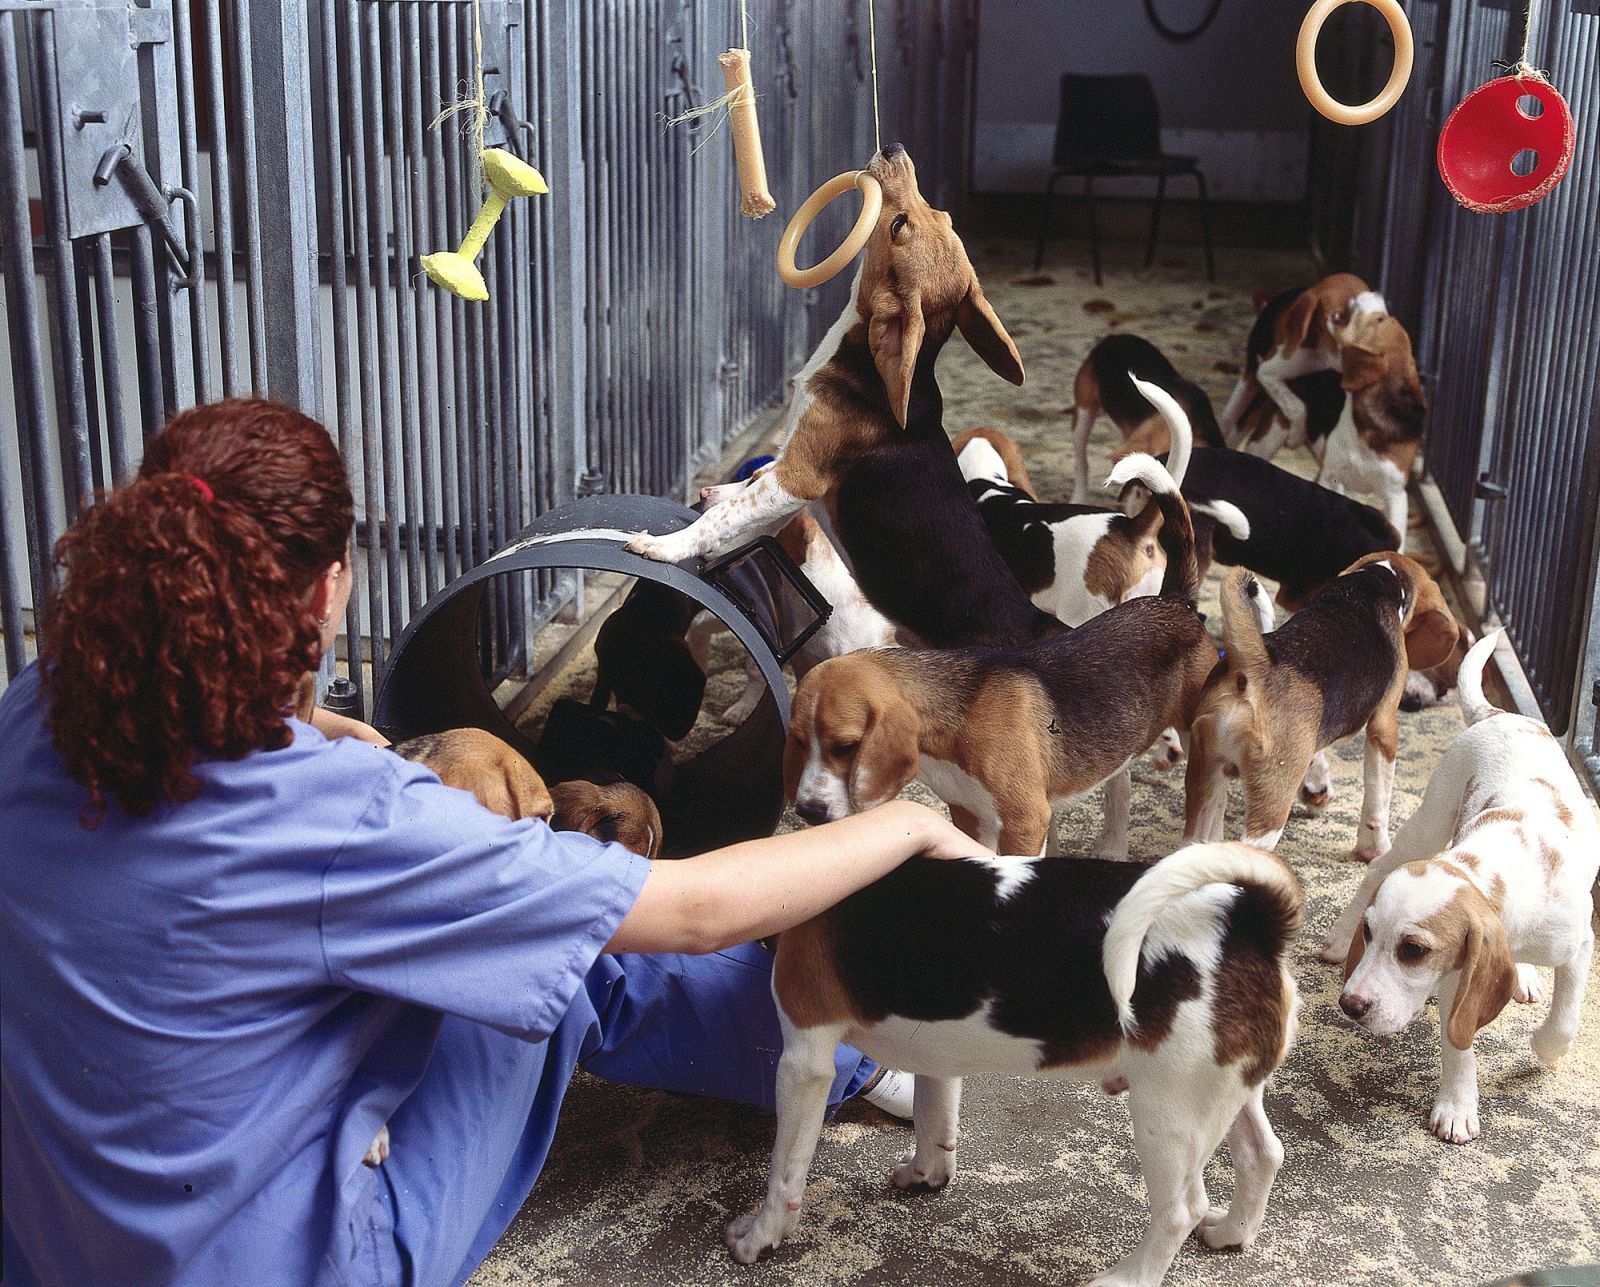 Laboratory beagles at play